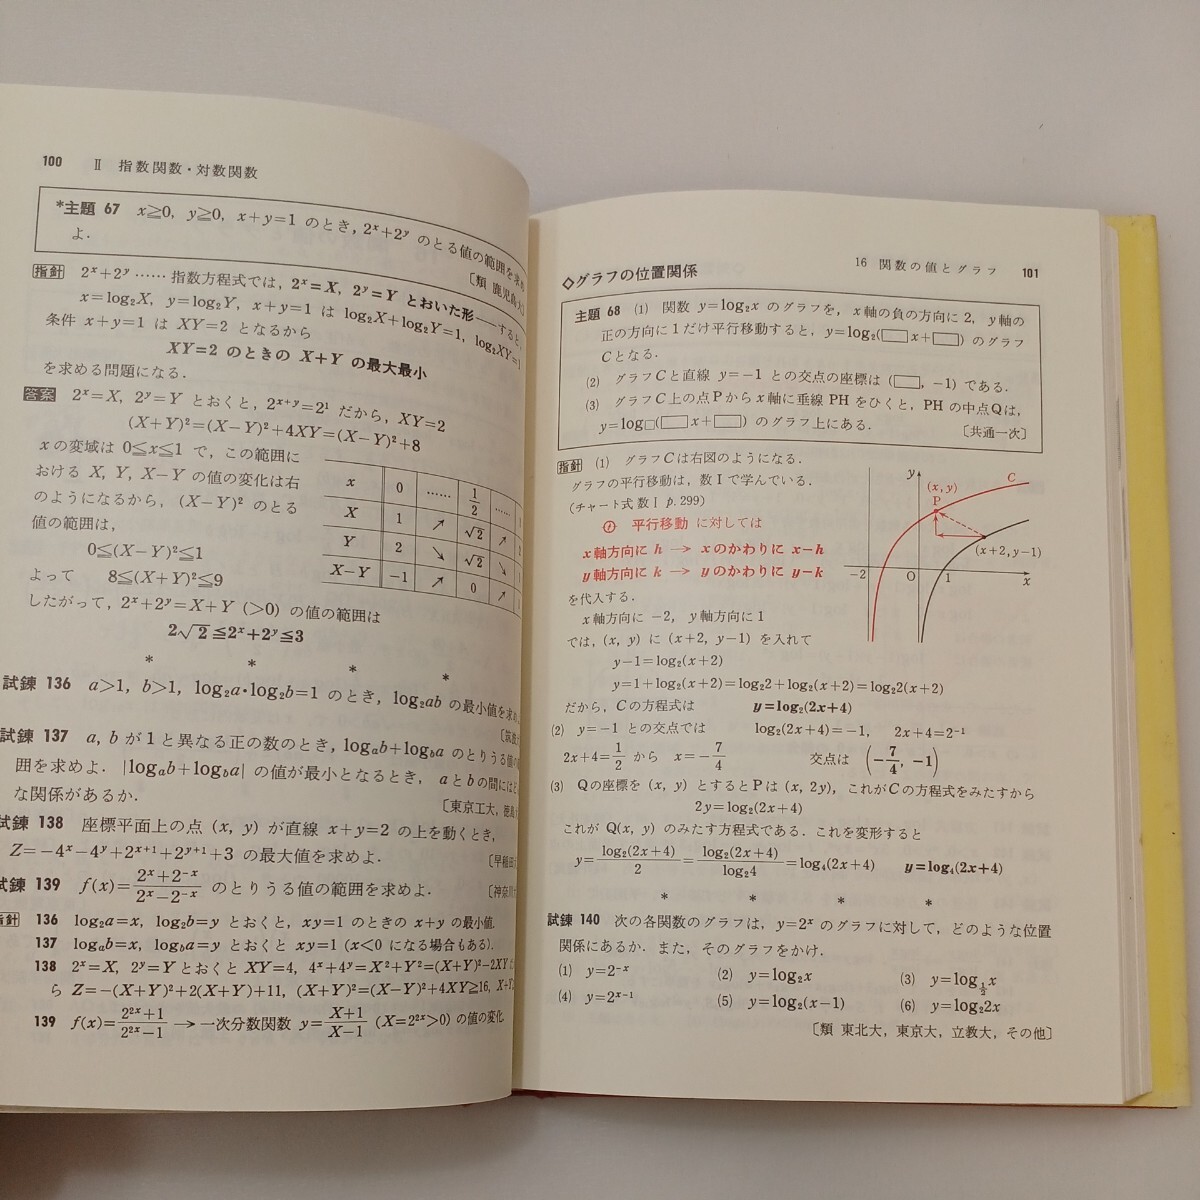 zaa-570♪チャート式 基礎解析 橋本純次(著) 数研出版 (1995/9/1) 単行本 高校数学 受験勉強 _画像5